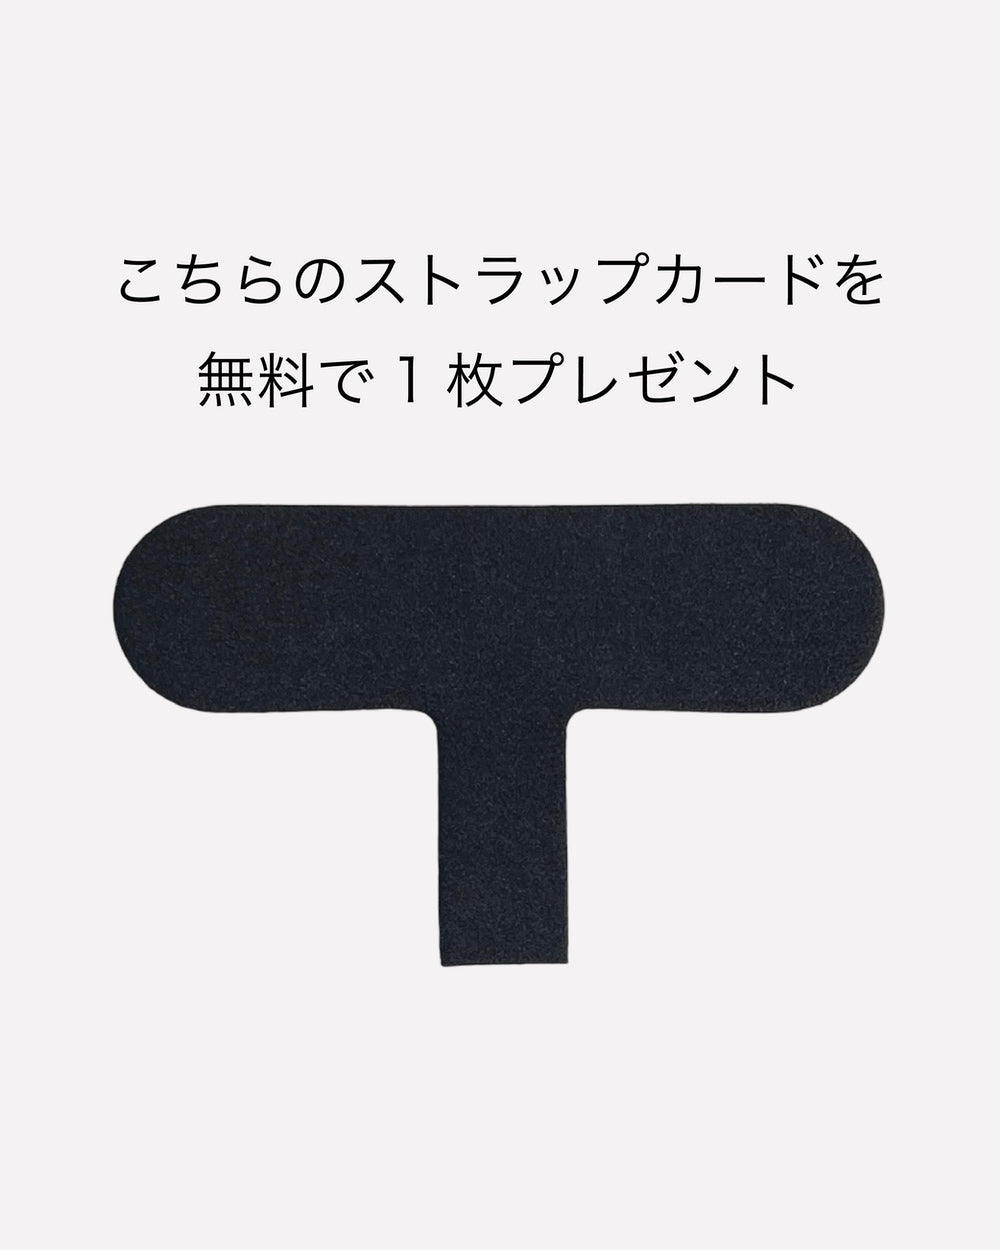 【セット商品】バンパーハードケース / R1001 / ブラック × ショルダーストラップ / ブラウン / R1785